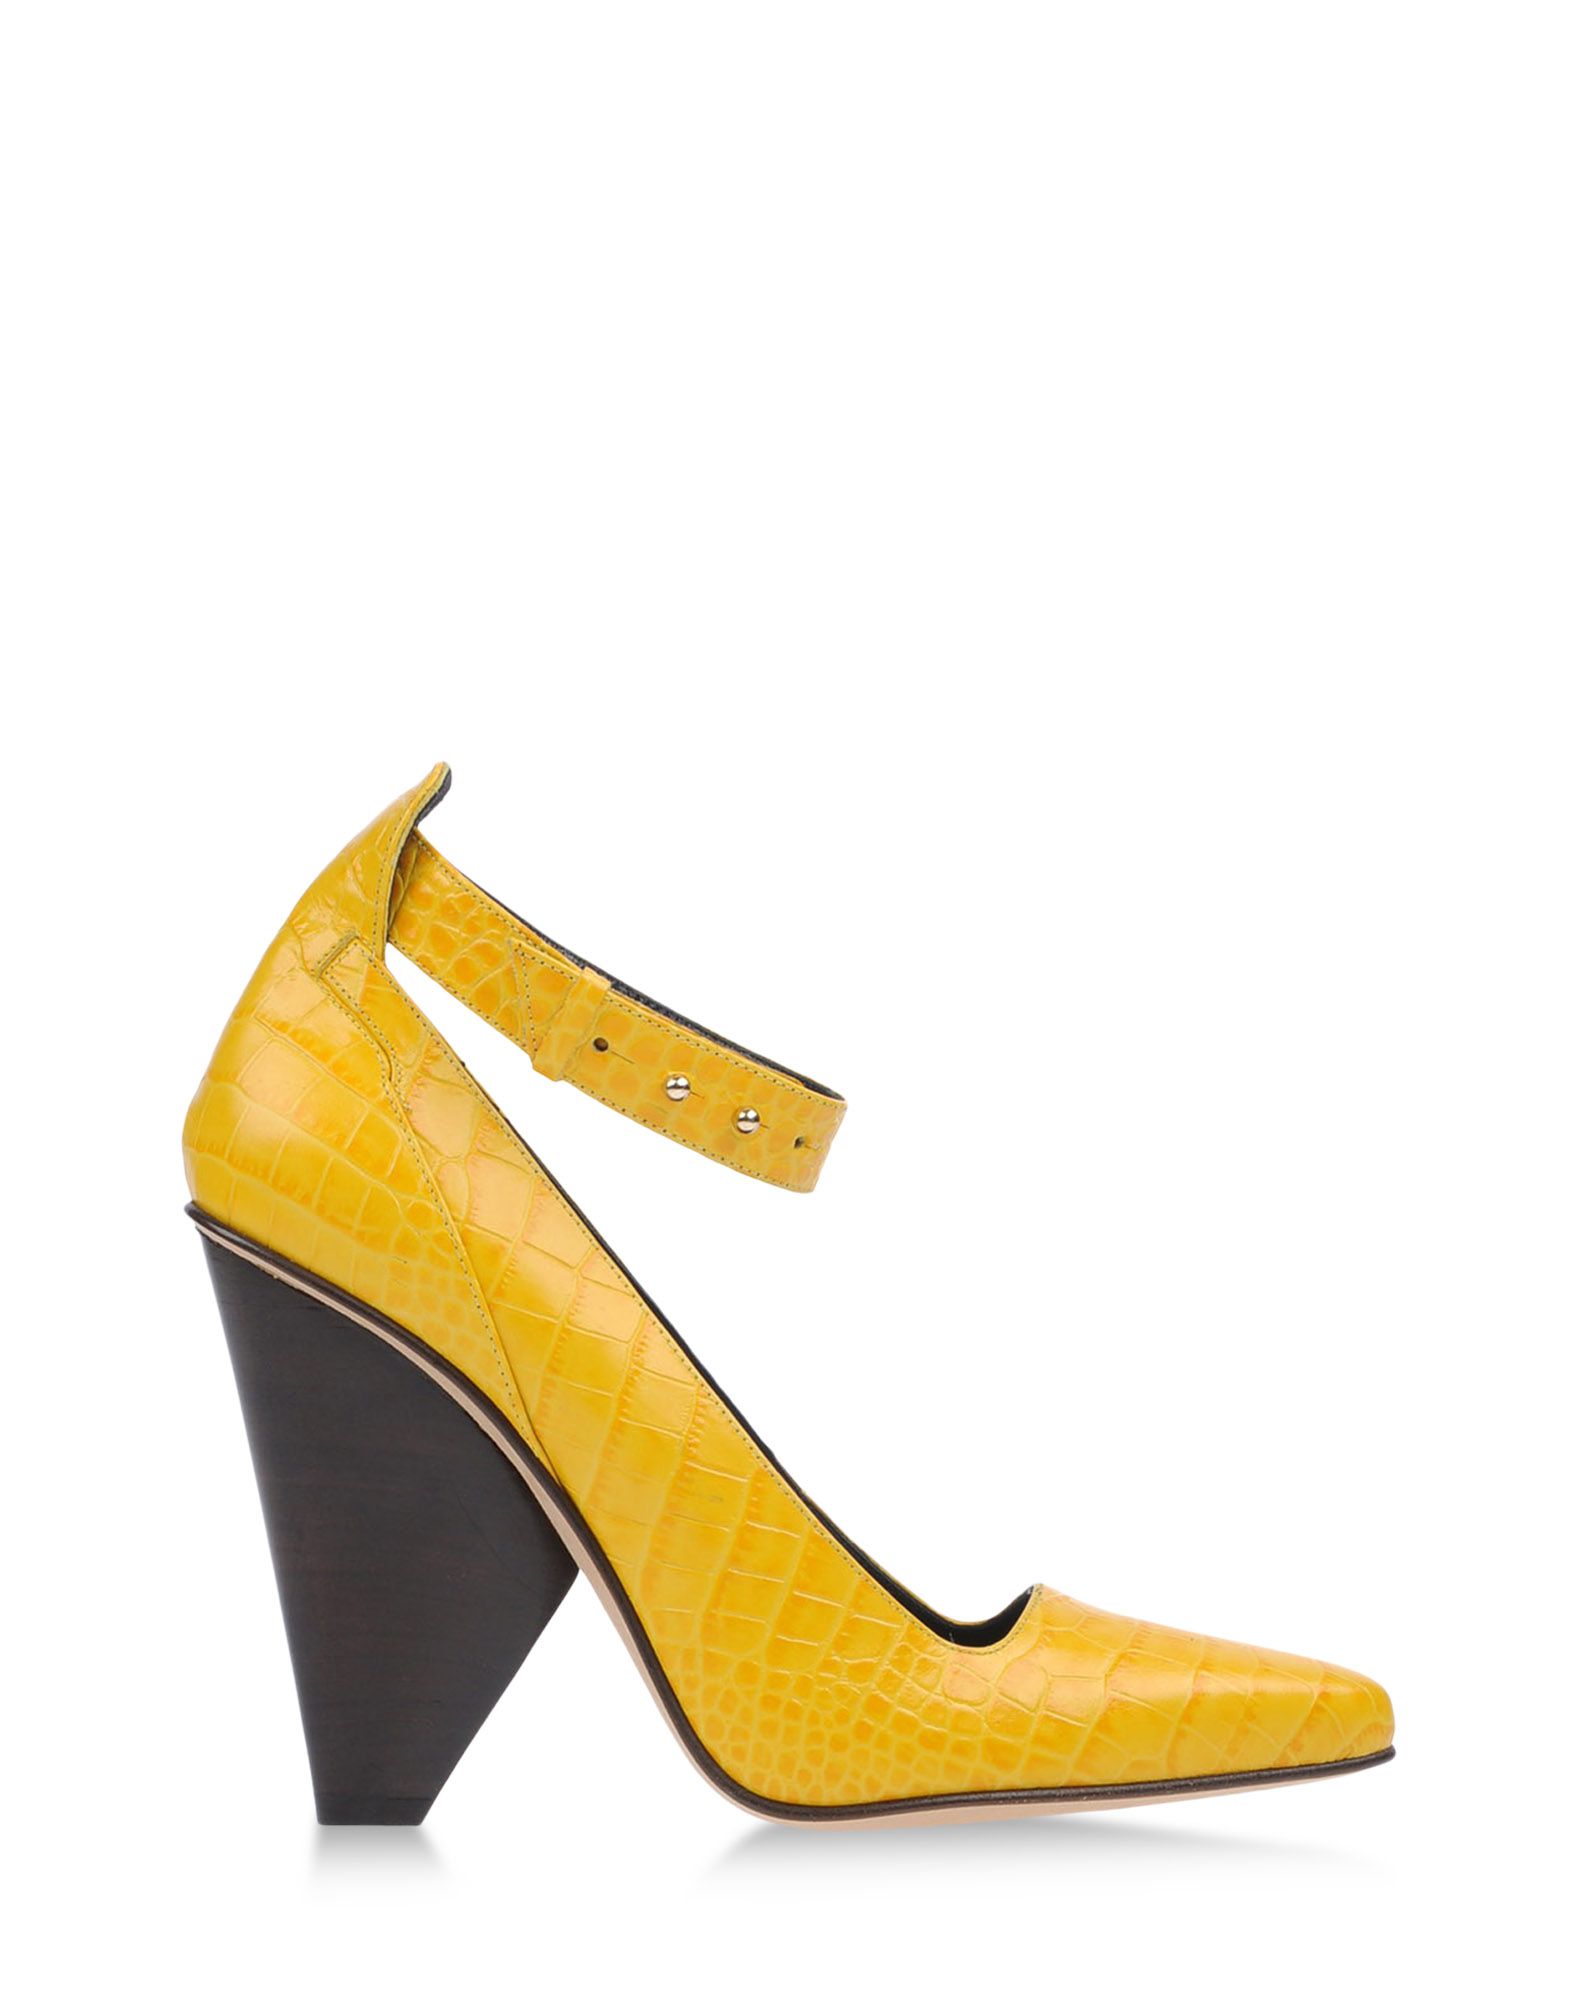 Foto Derek Lam Zapatos De SalóN Mujer Amarillo